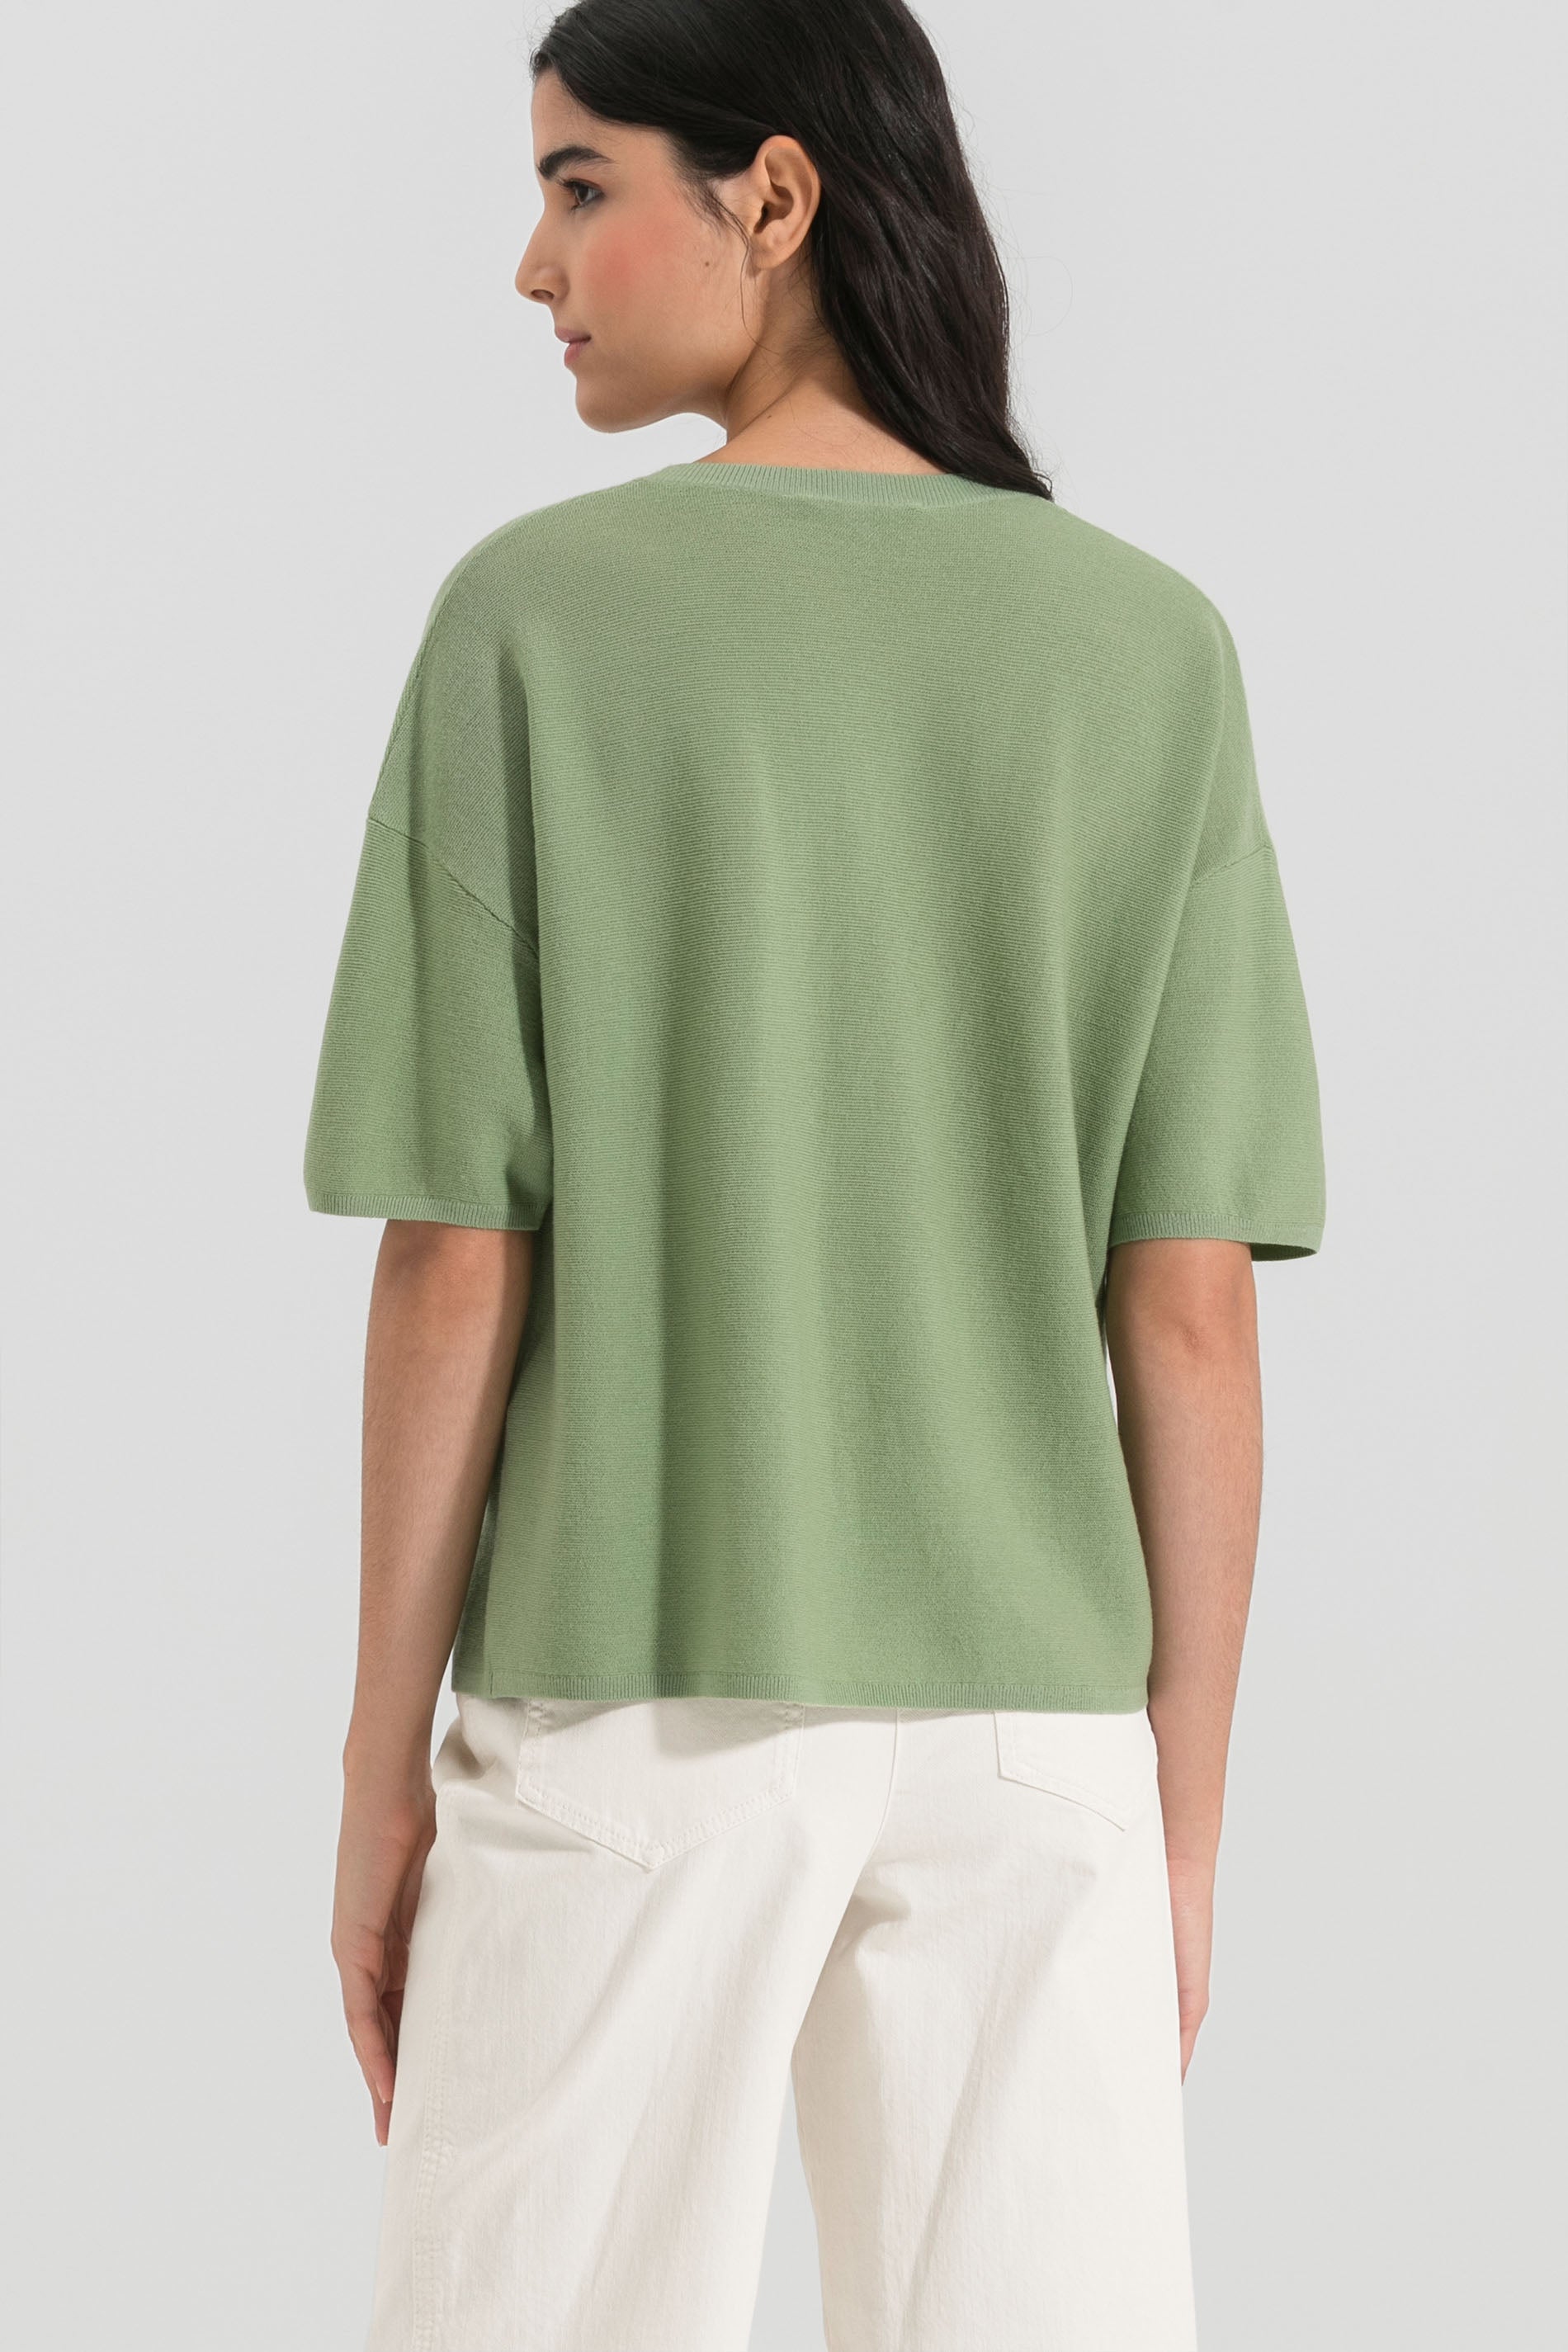 LUISA CERANO-OUTLET-SALE-Strick-Shirt aus Merinowolle-Strick-by-ARCHIVIST